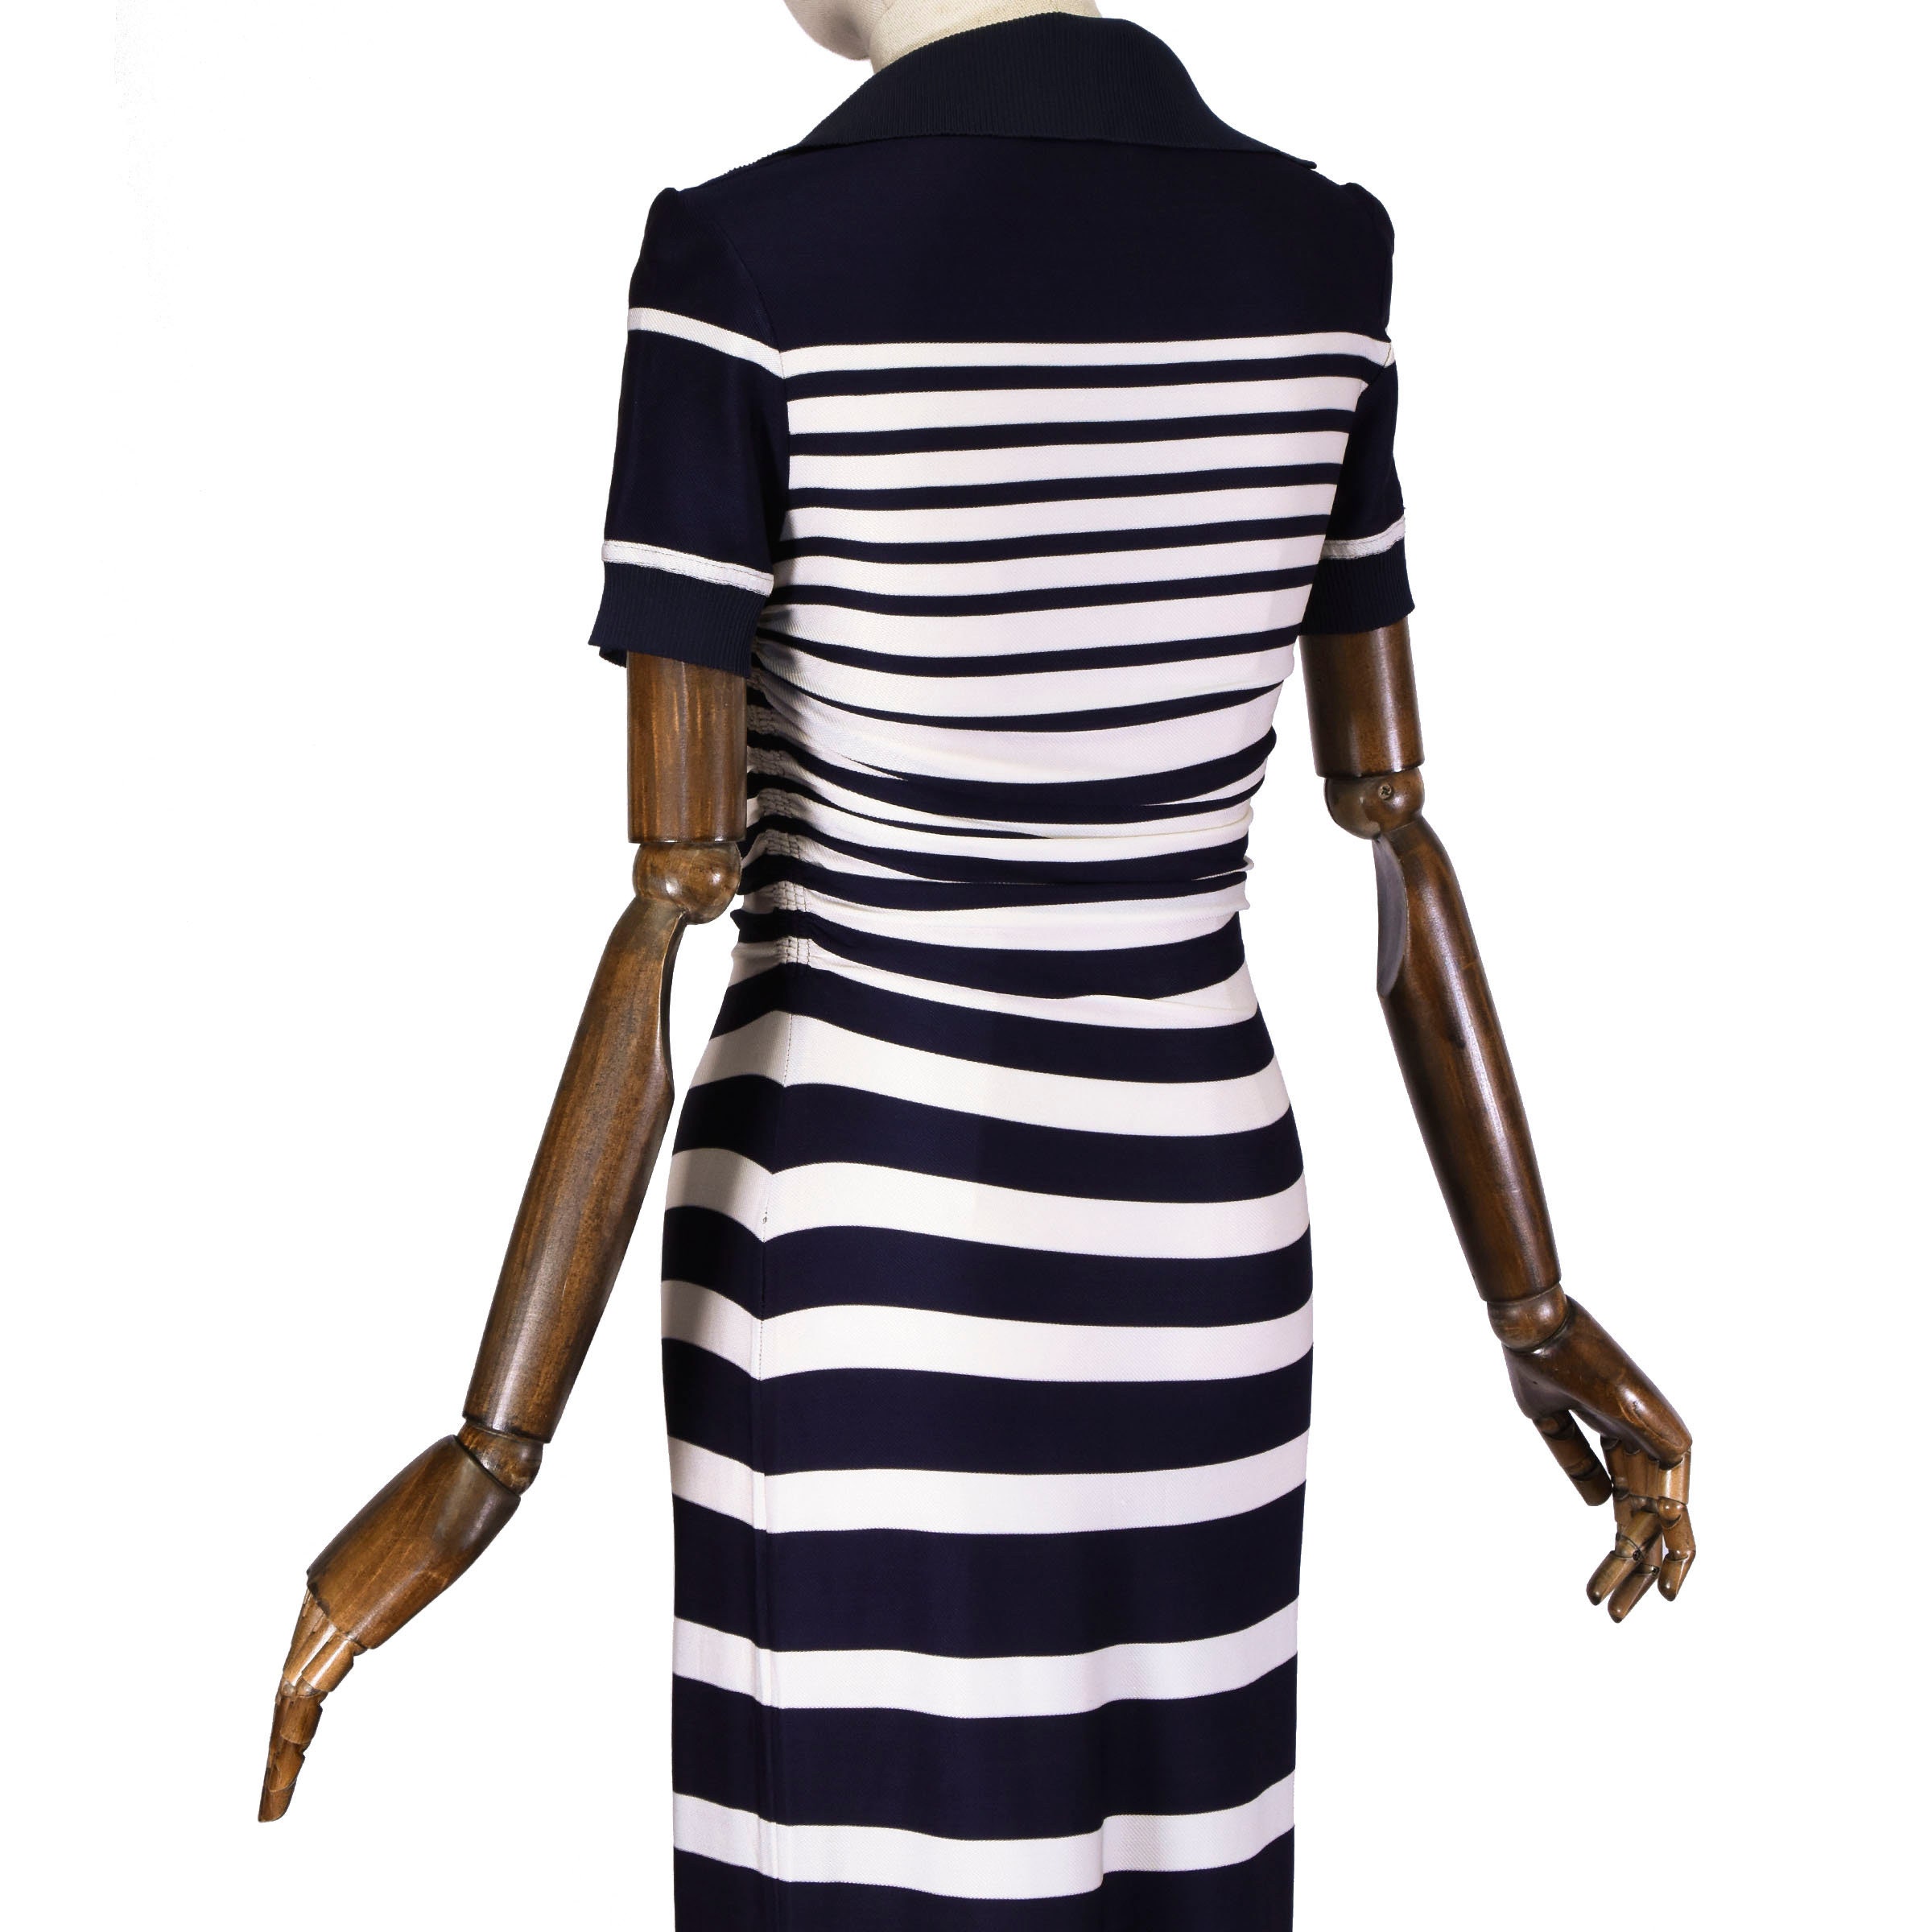 GAULTIER striped dress Jean Paul Gaultier Stripe Jersey | Etsy